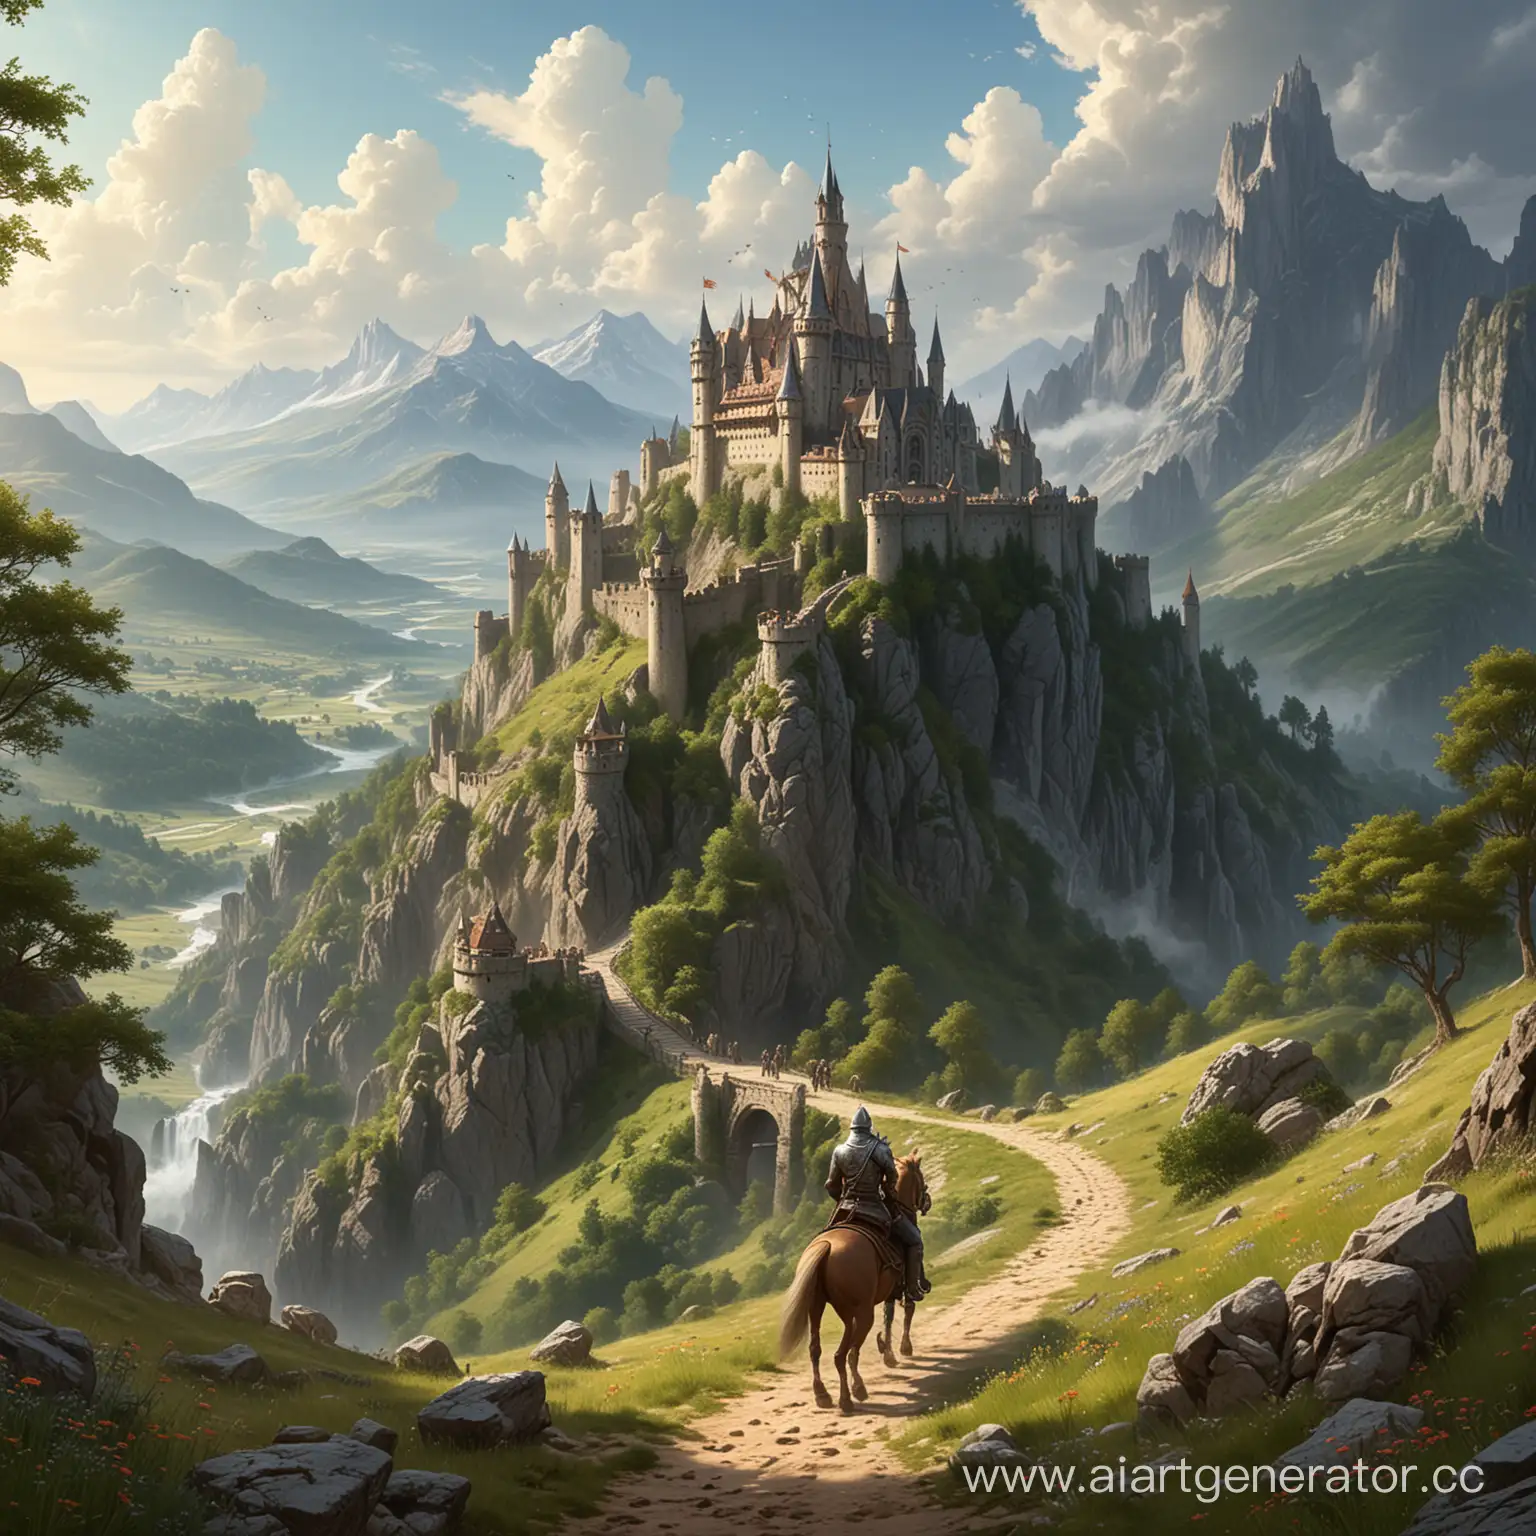 горная местность, лето, стоит замок, к которому скачет на коне рыцарь, на пути ему встретились эльфы и орки